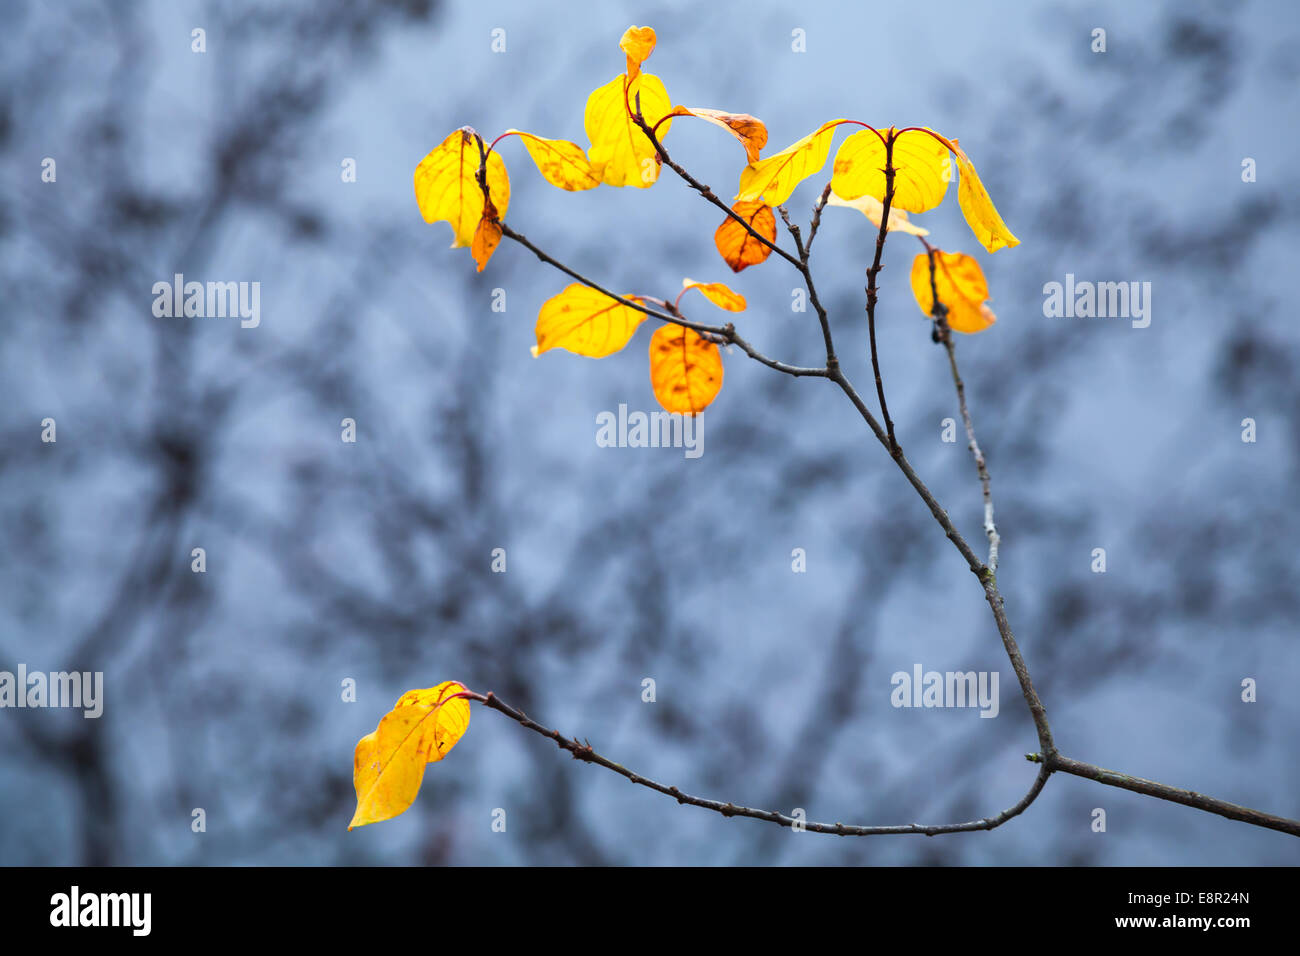 Les feuilles jaunes d'automne sur les côtes de l'arbre avec les reflets dans l'eau froide du lac encore bleu Banque D'Images